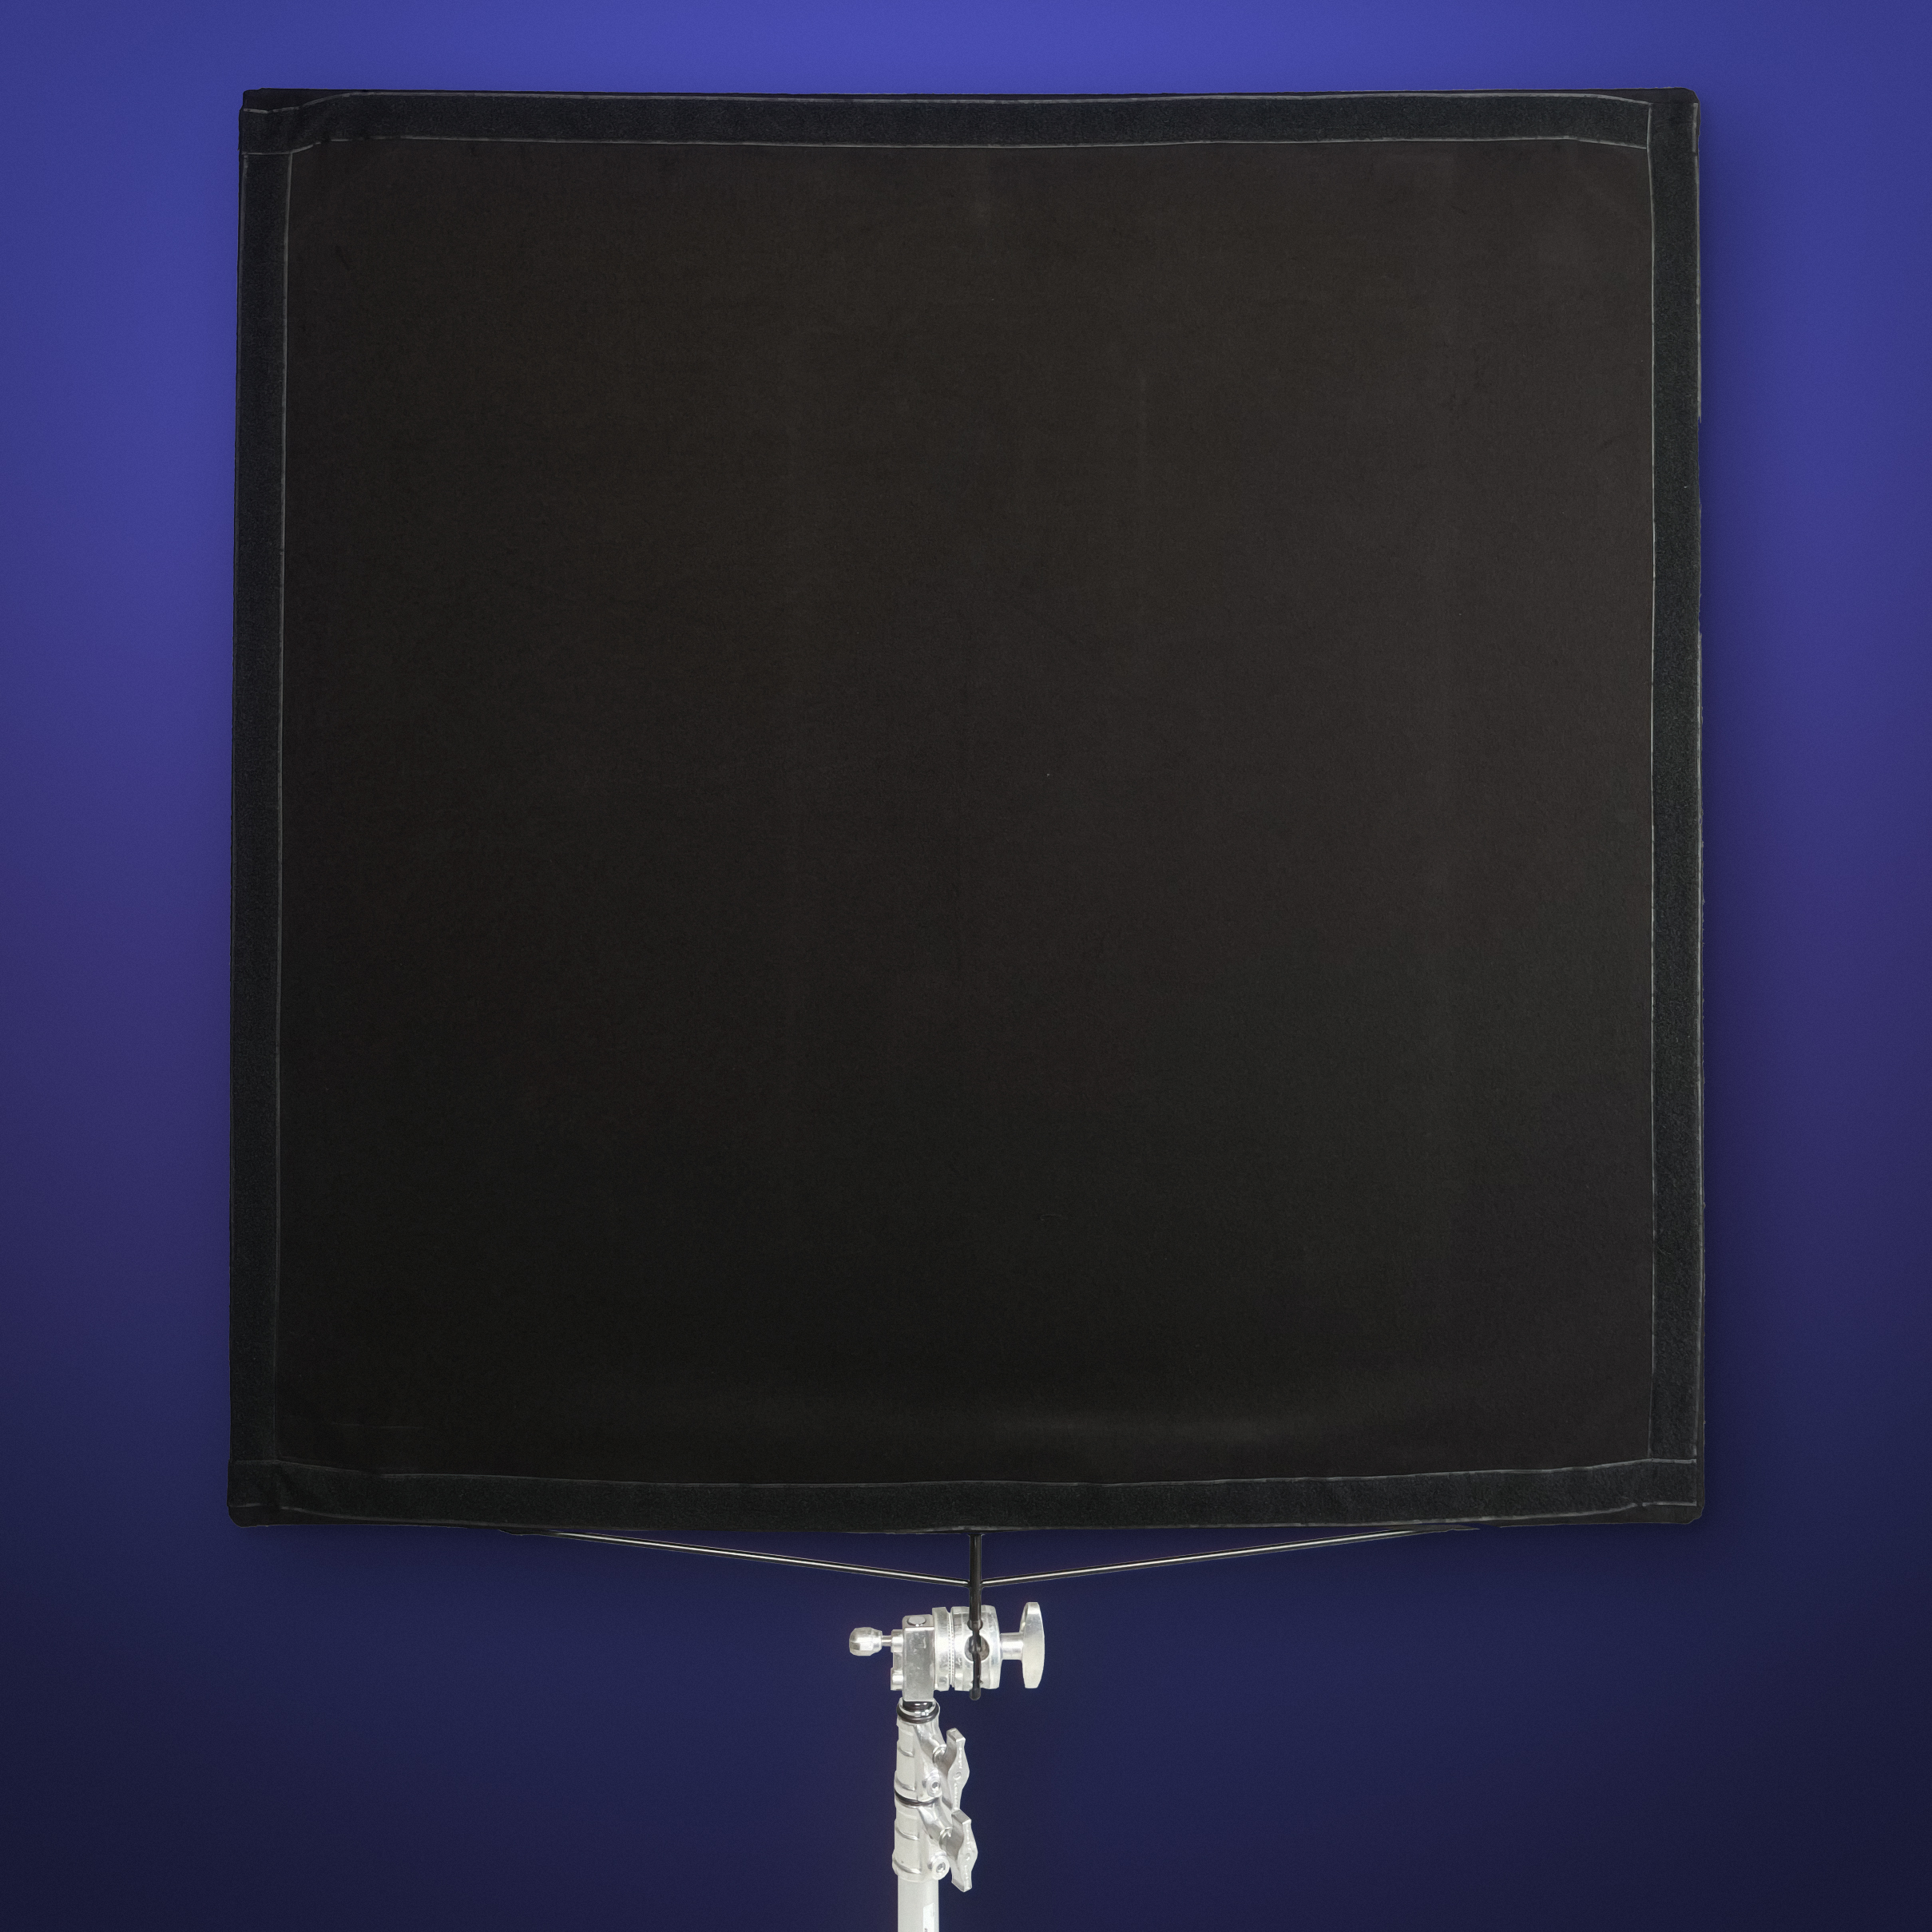 Flaga wyciemniająca 4x4 typu floppy 120x120cm